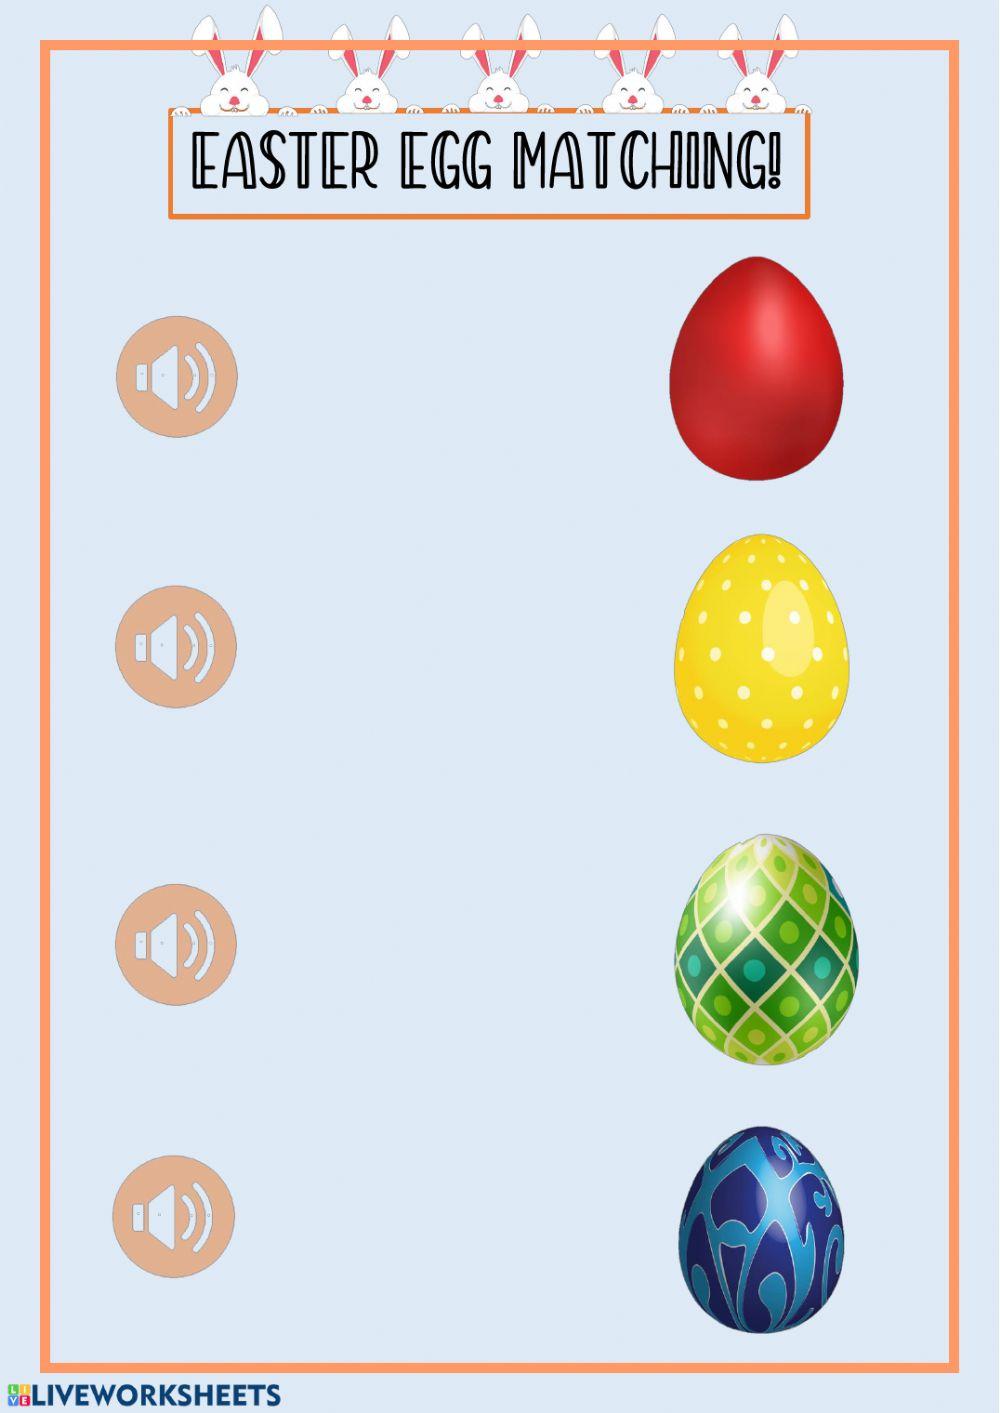 Easter egg colours